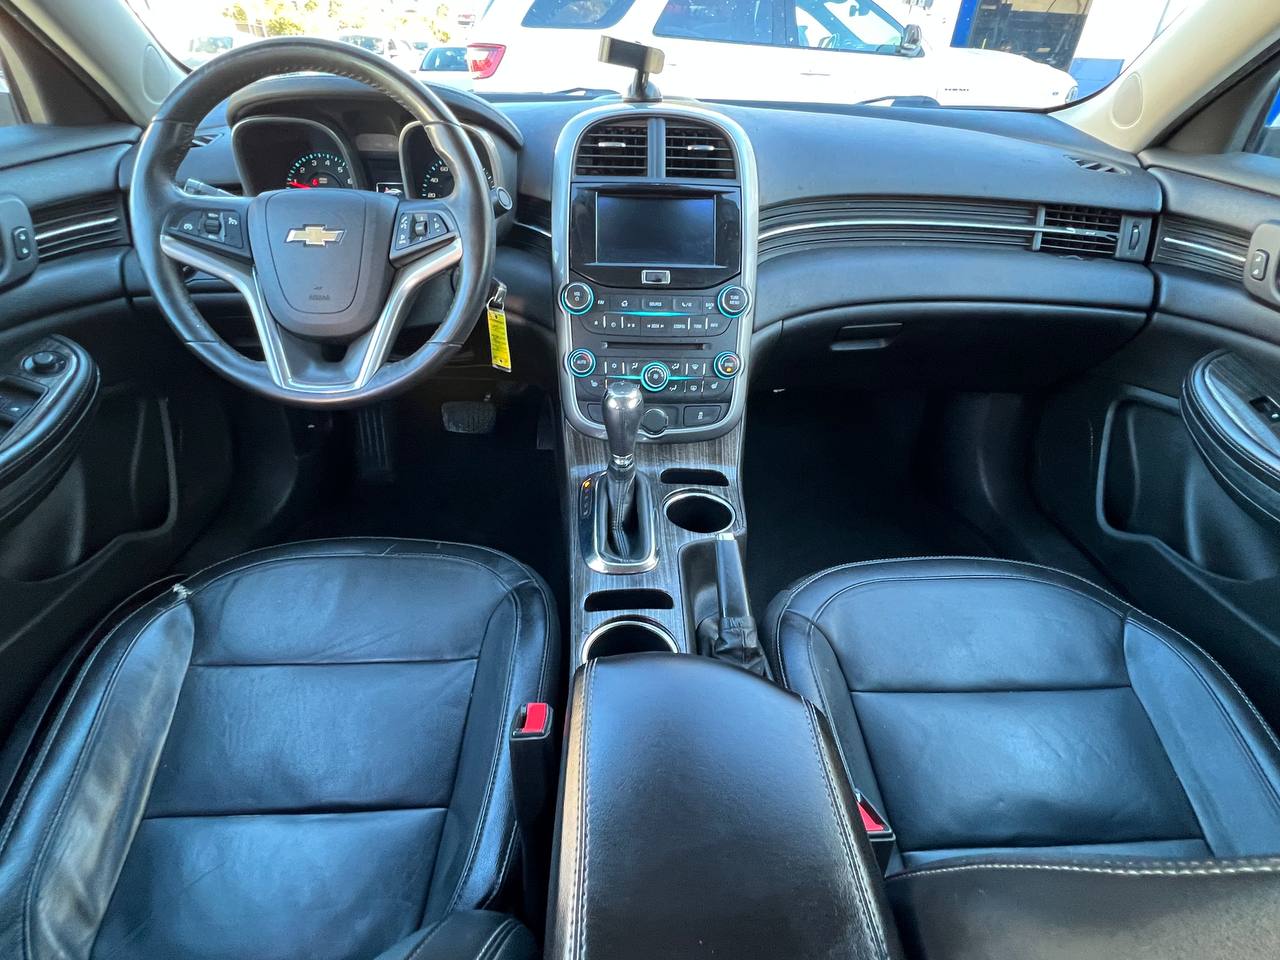 Used - Chevrolet Malibu LTZ Sedan for sale in Staten Island NY